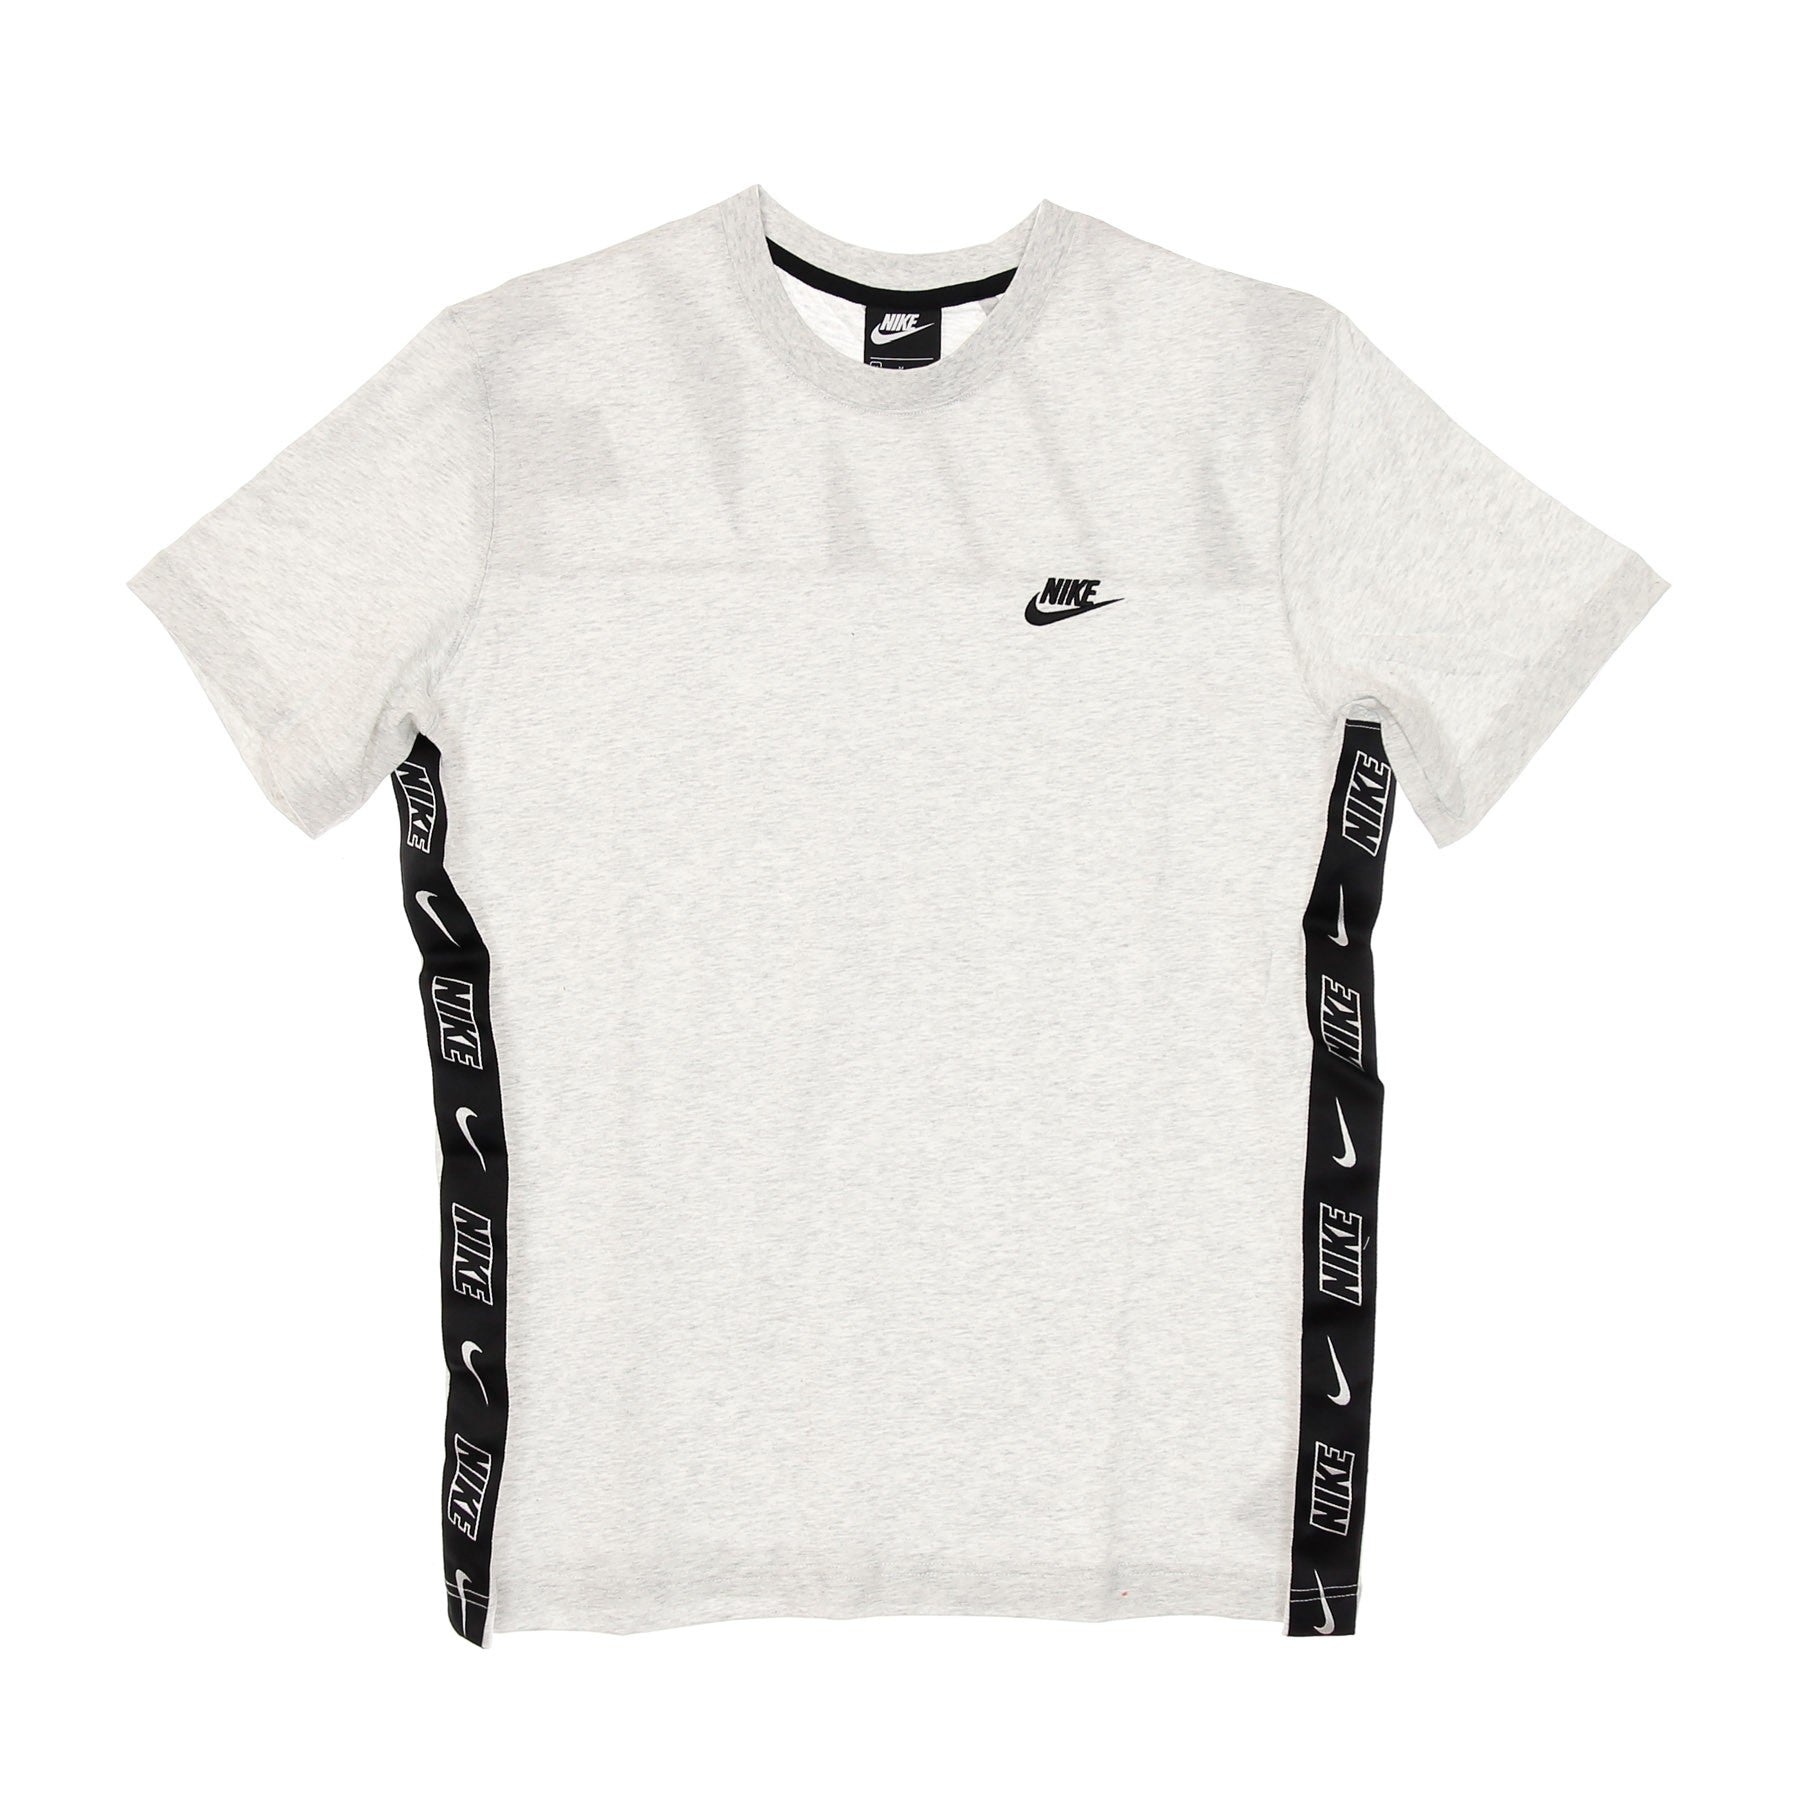 Nike, Maglietta Uomo Sportswear Short Sleeve Knit Top Seasonal, Birch Heather/black